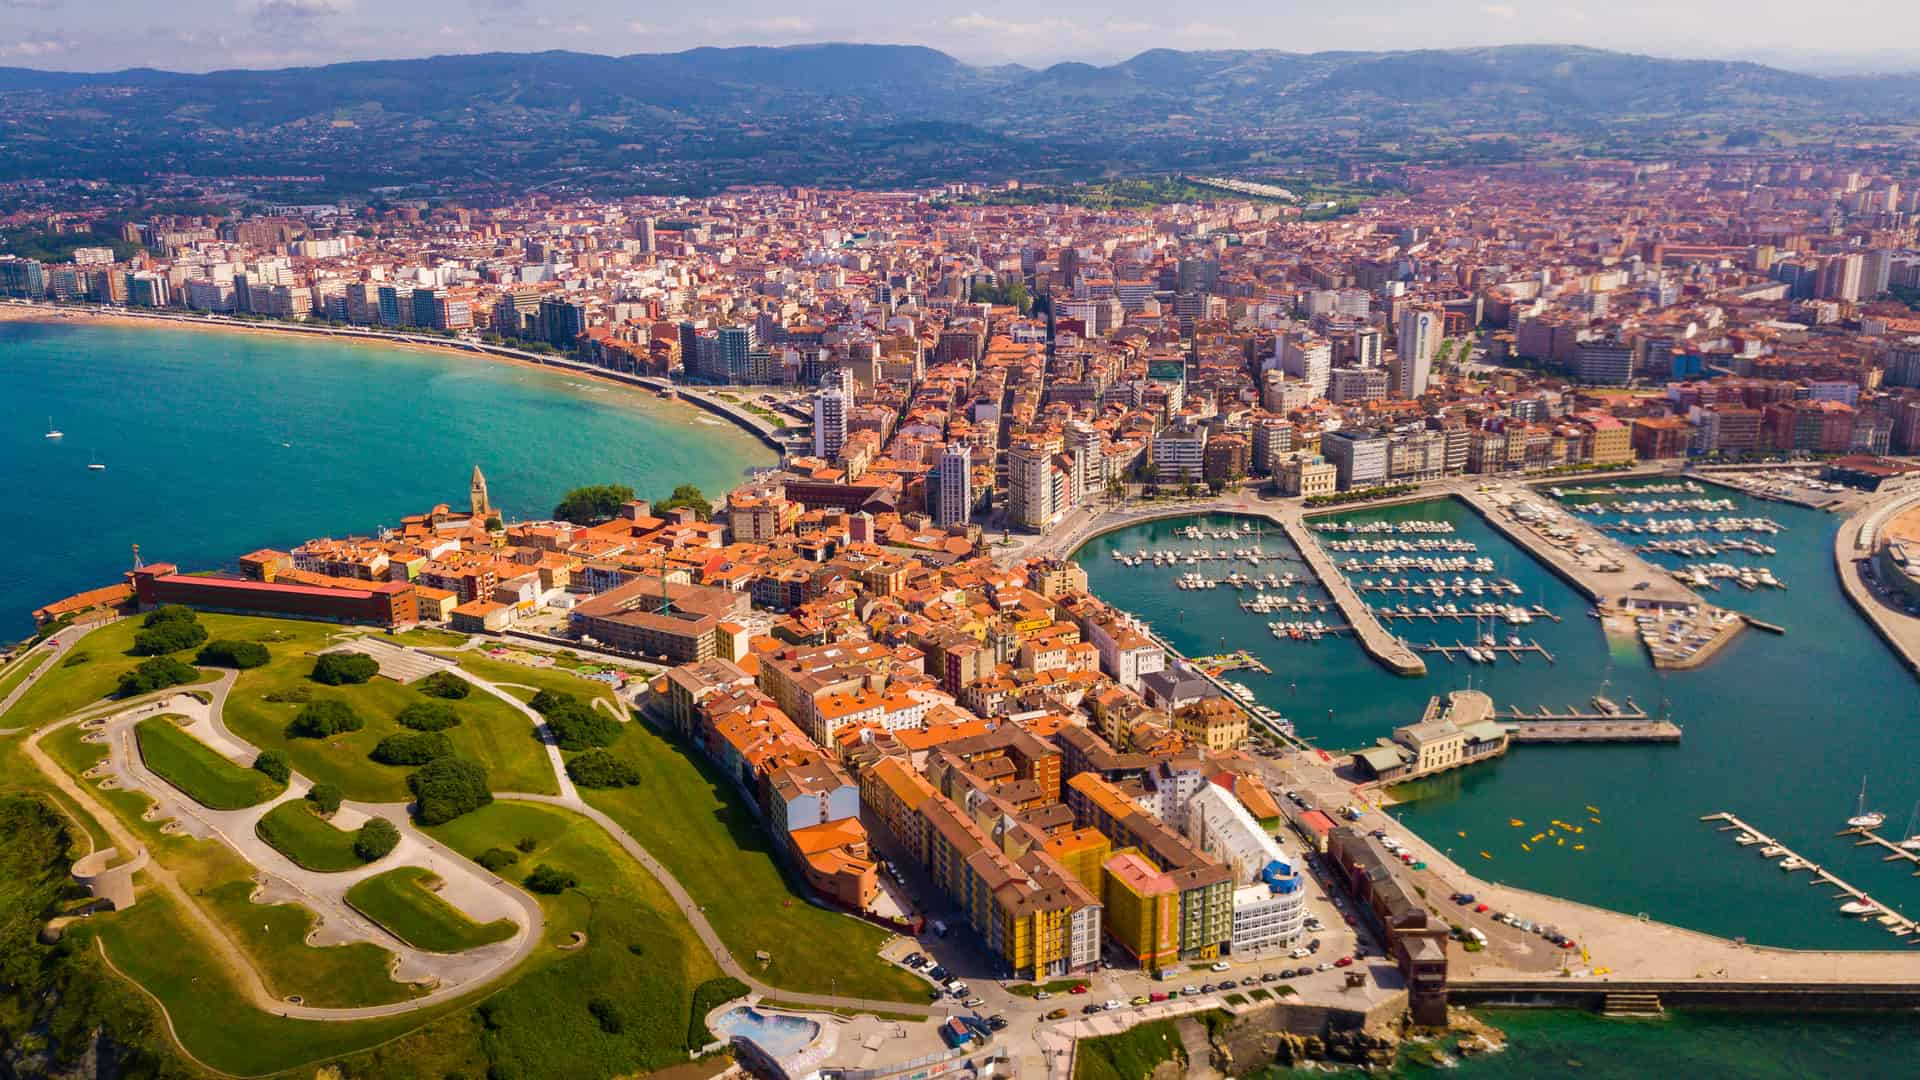 Vista desde el dron de Gijón con vistas al puerto deportivo donde es posible contratar los servicios telefónicos de virgin telco